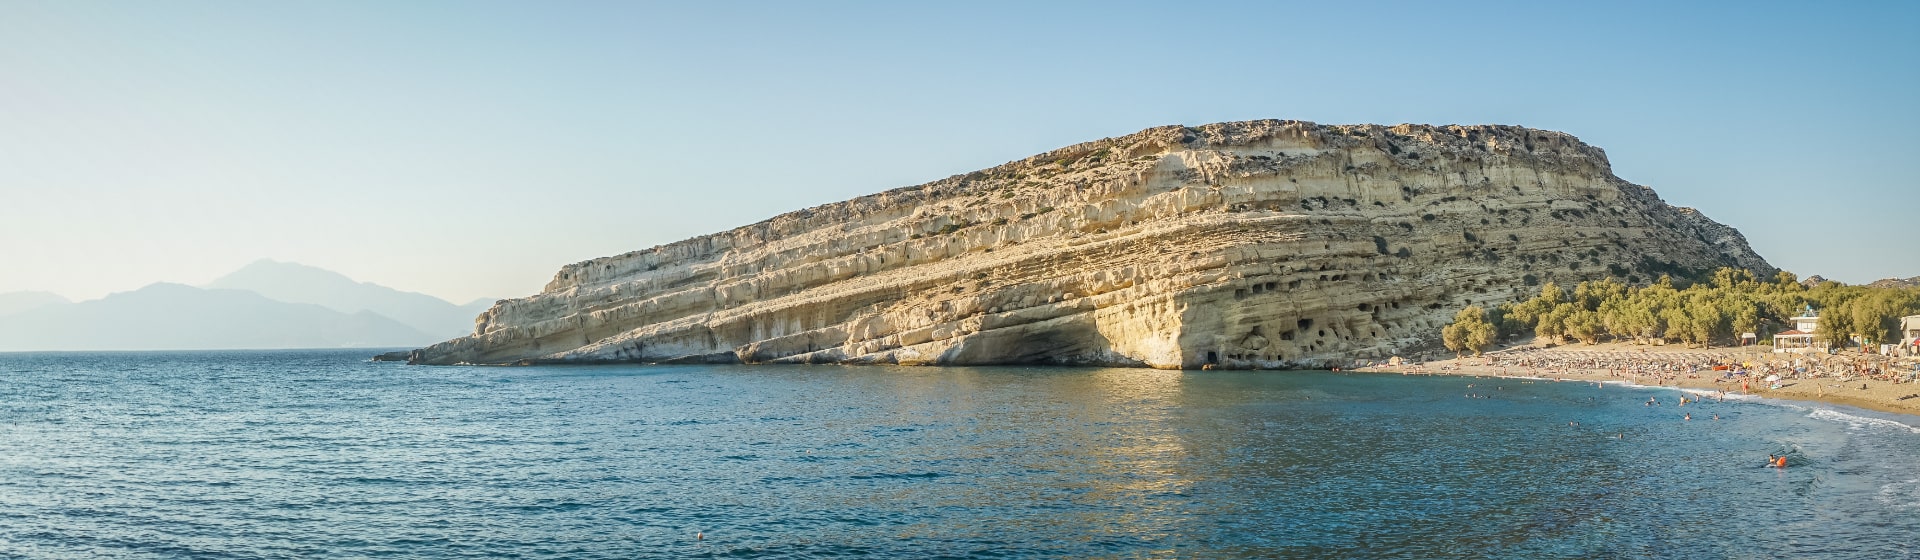 Klif z wykutymi jaskiniami, morze i kawałek plaży